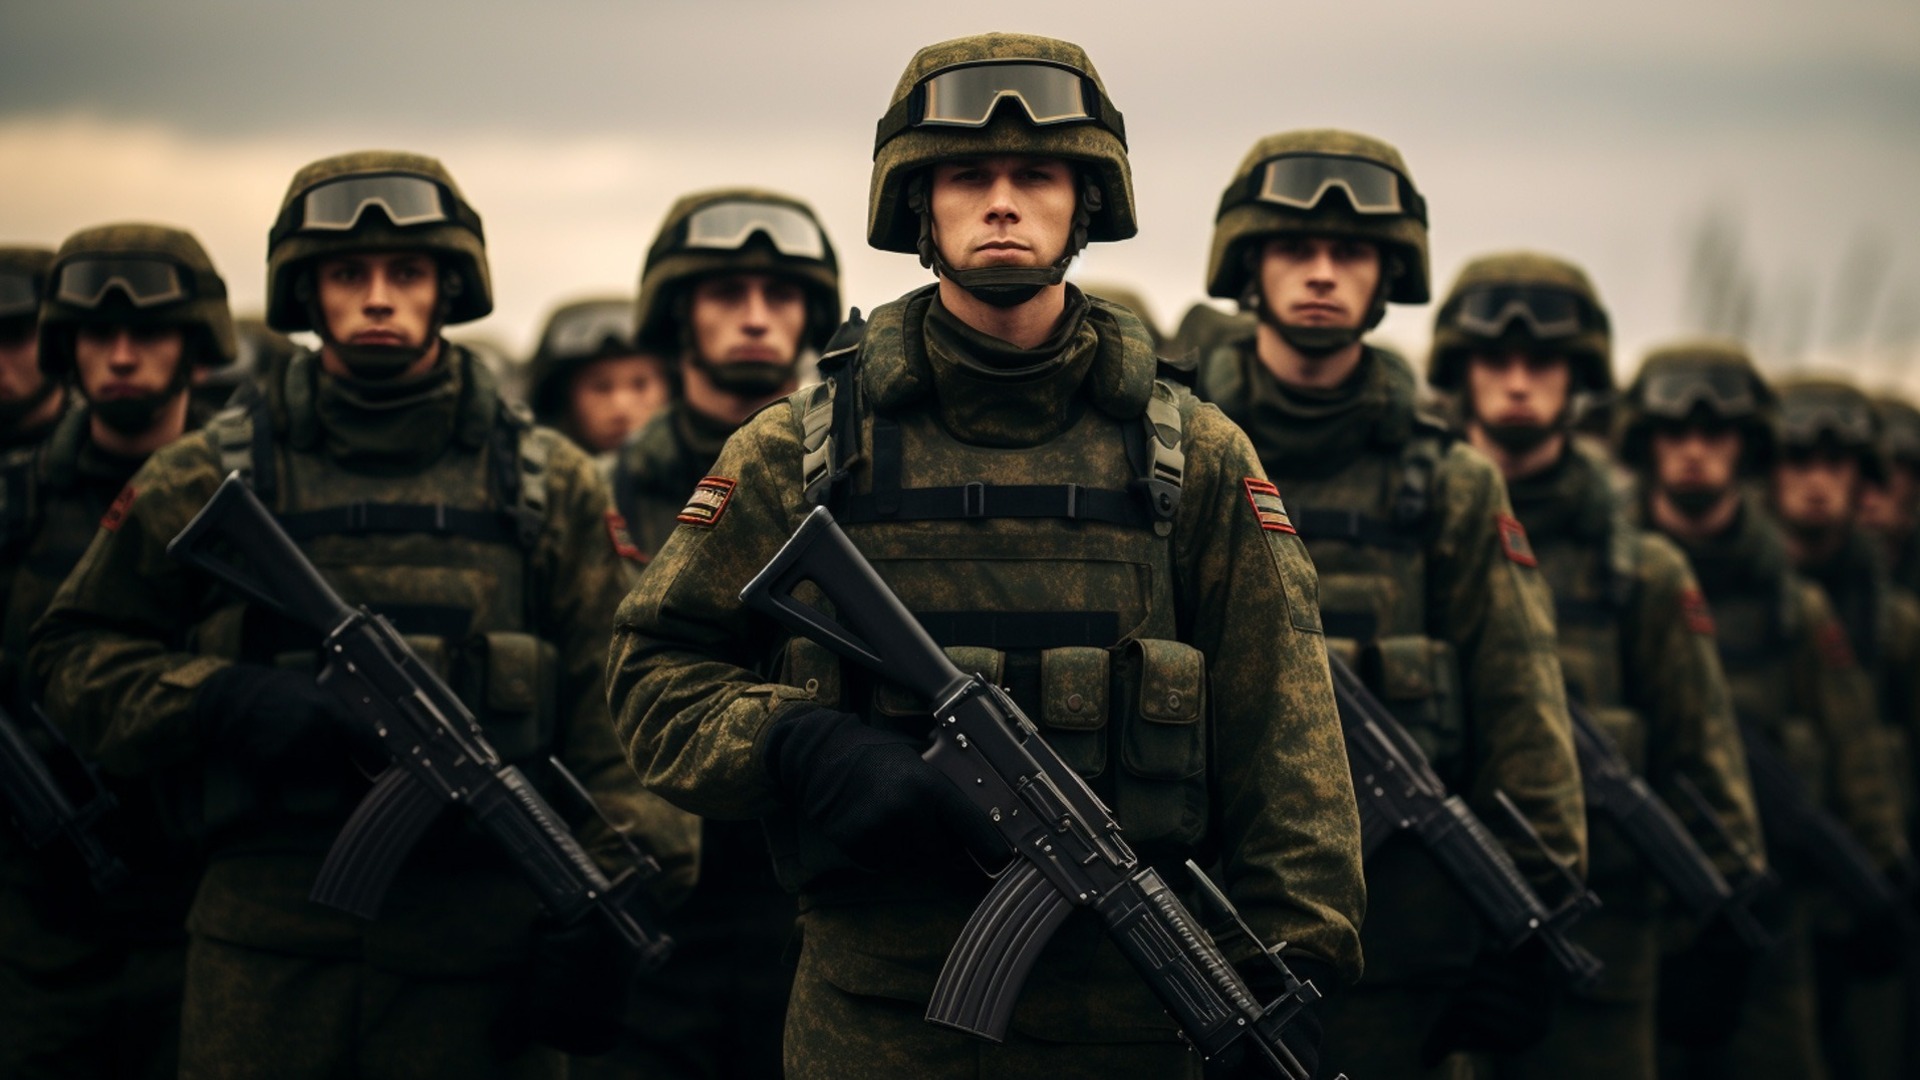 Юрий Трутнев: Мы рядом с бойцами отряда РБСИ «Союз» и всегда готовы помочь